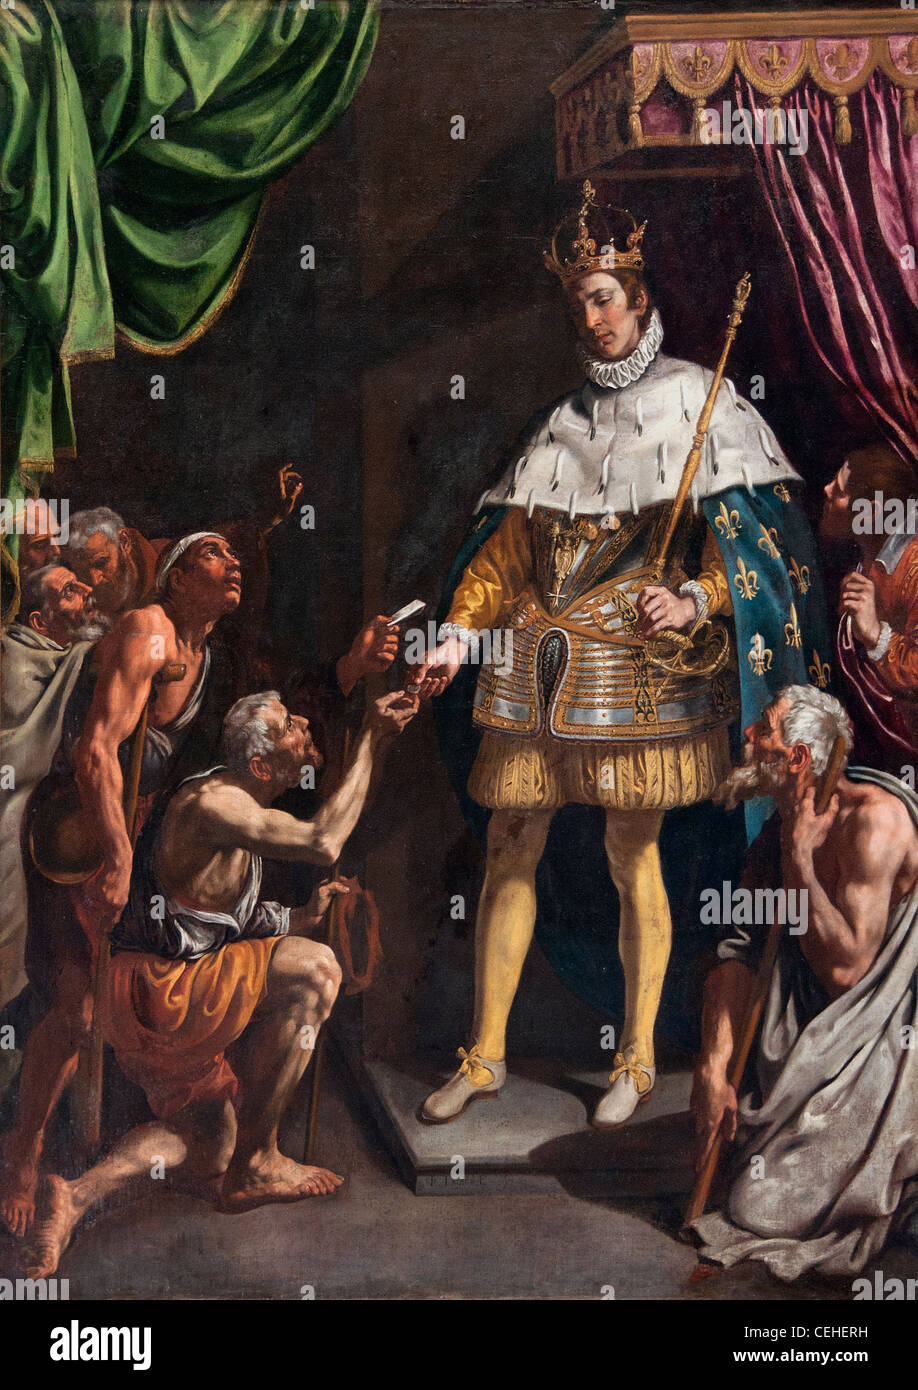 Tristan de Escamilla, Luis (1586-1624) Saint Louis roi de France St. Louis King of France distributing alms Stock Photo